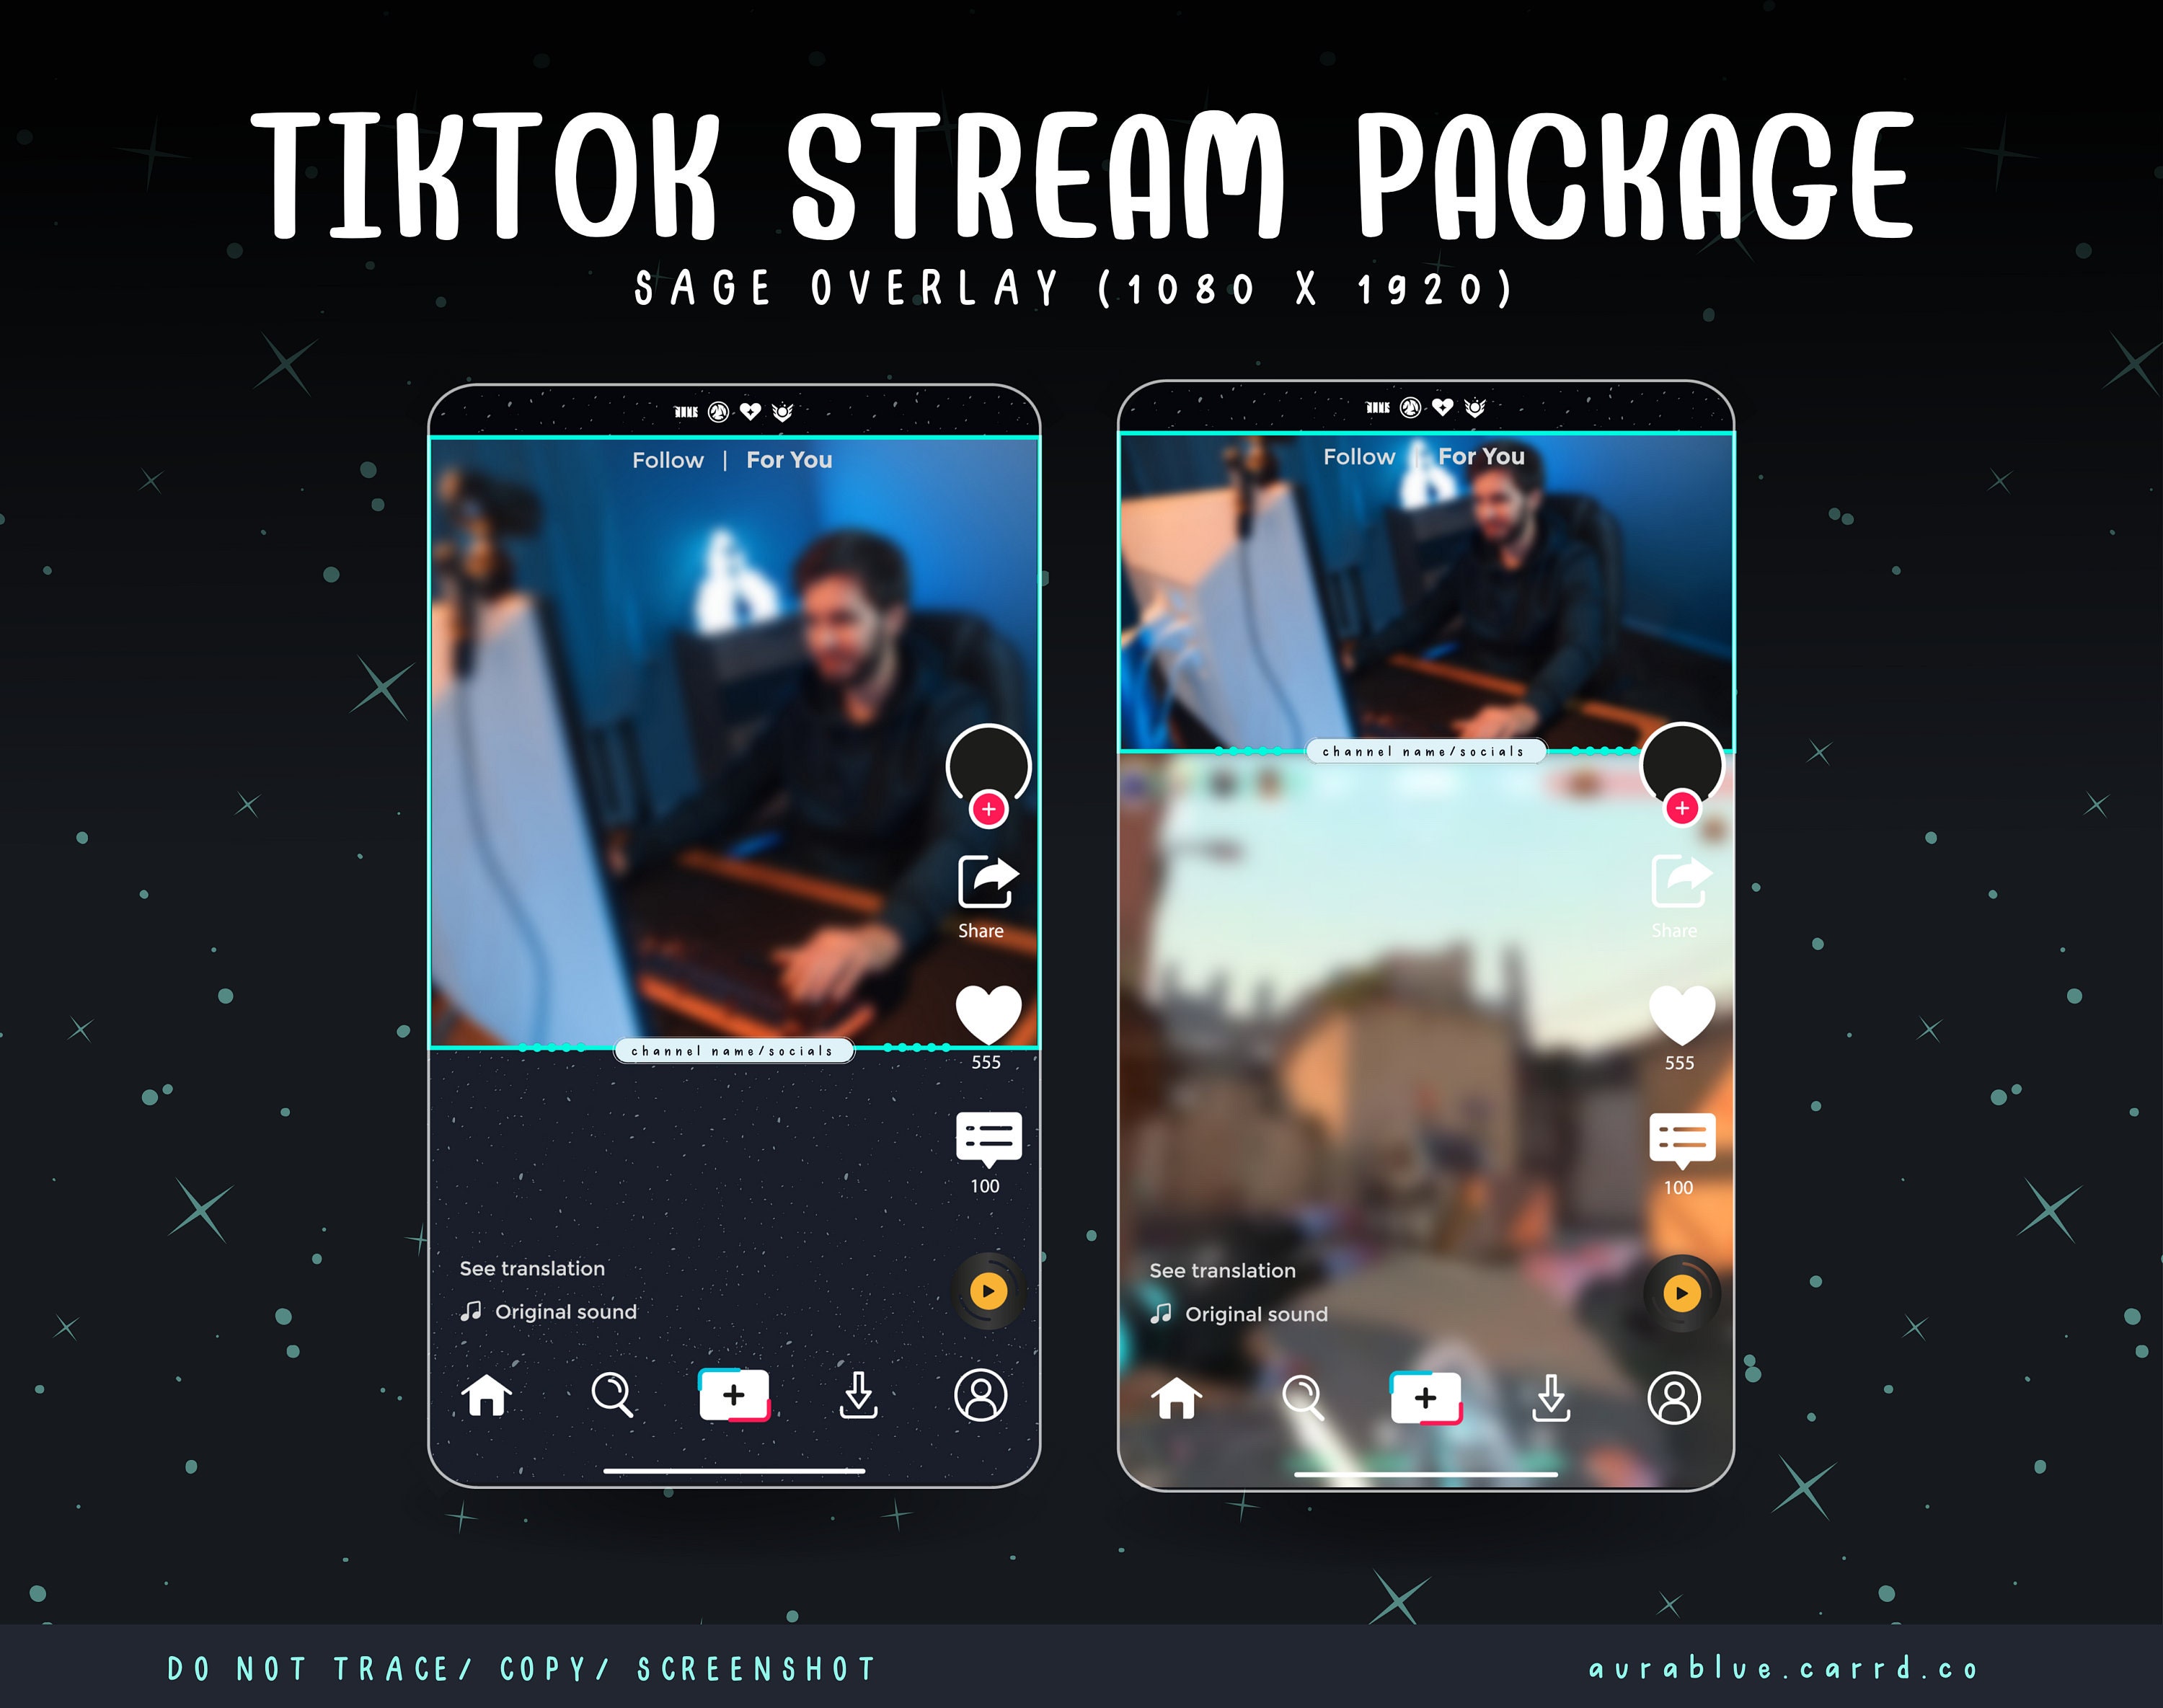 Tiktok overlays for your live stream!? Yes pls 😍 #streamer #streaming